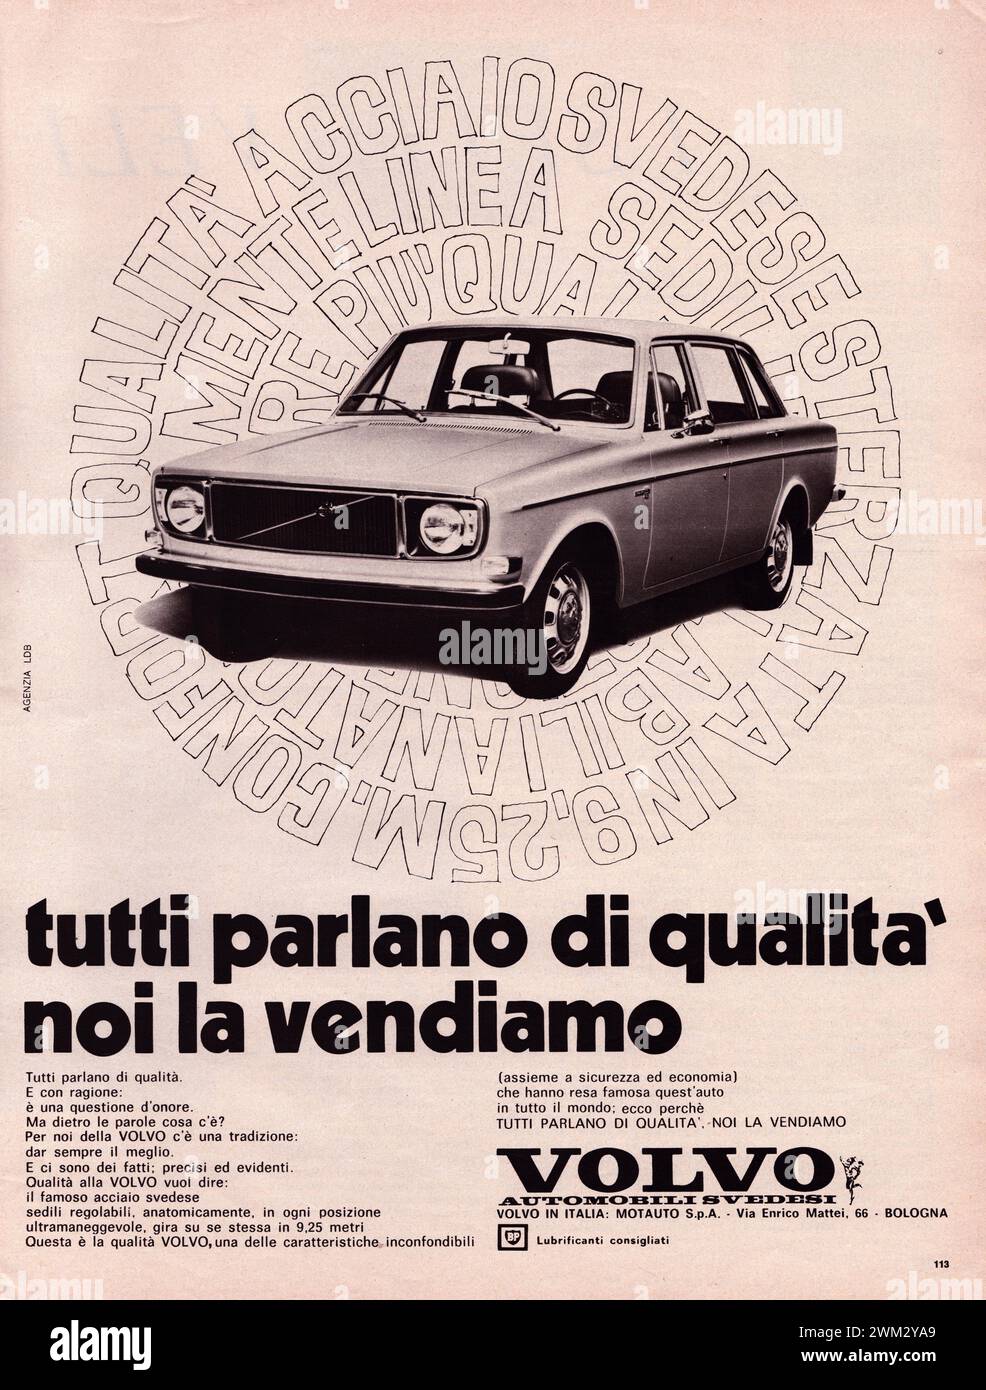 Volvo Pubblicità di una vecchia rivista in italiano Foto Stock